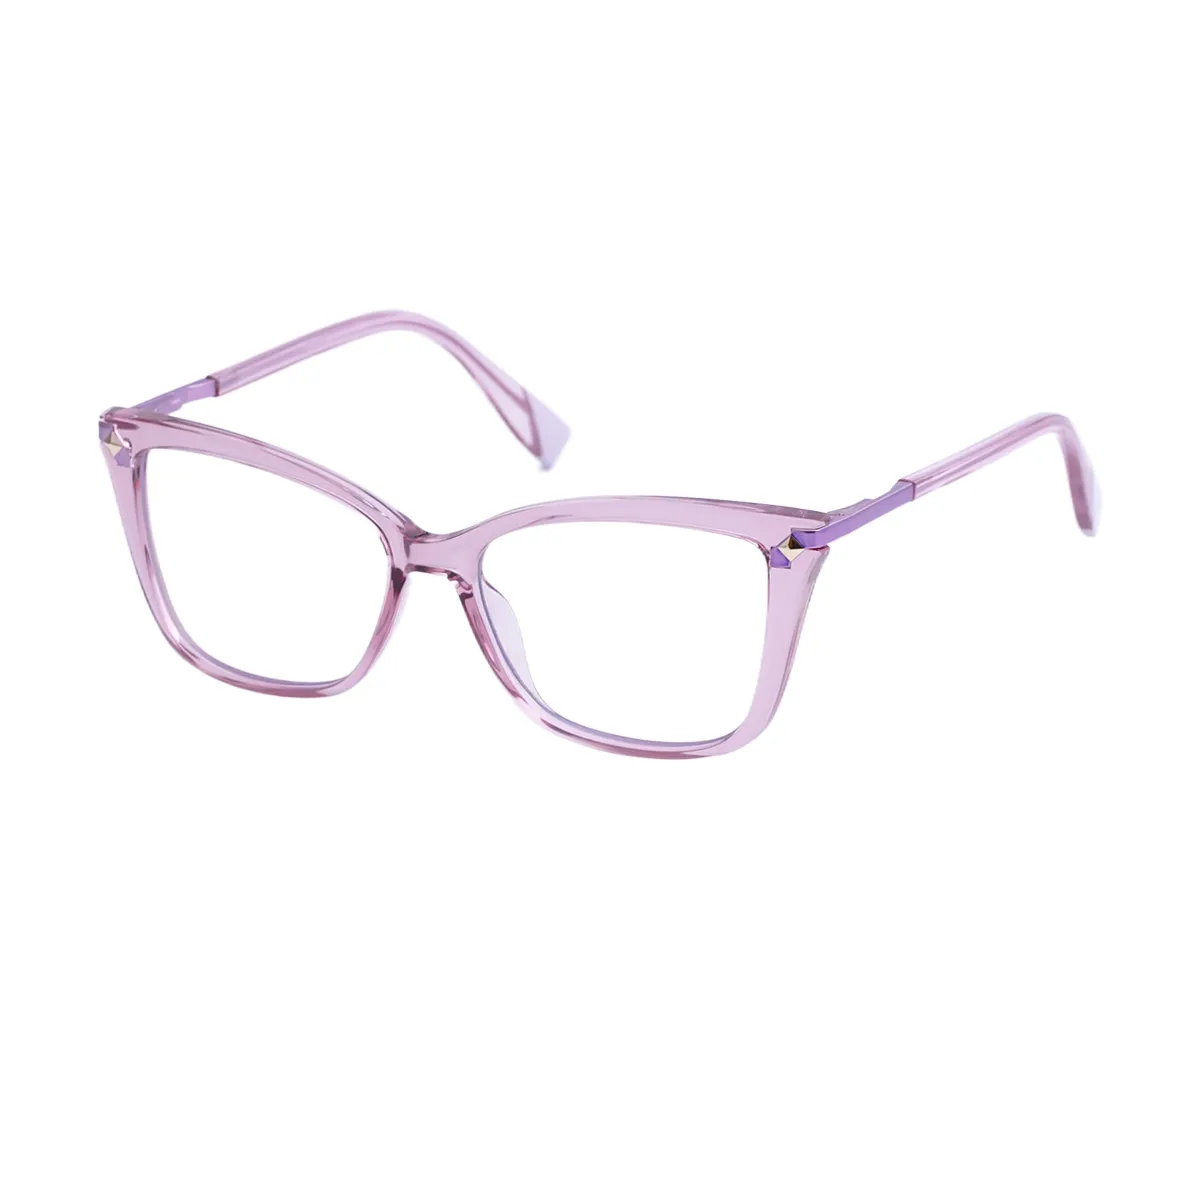 Arabela - Cat-eye Pink Glasses for Women - EFE